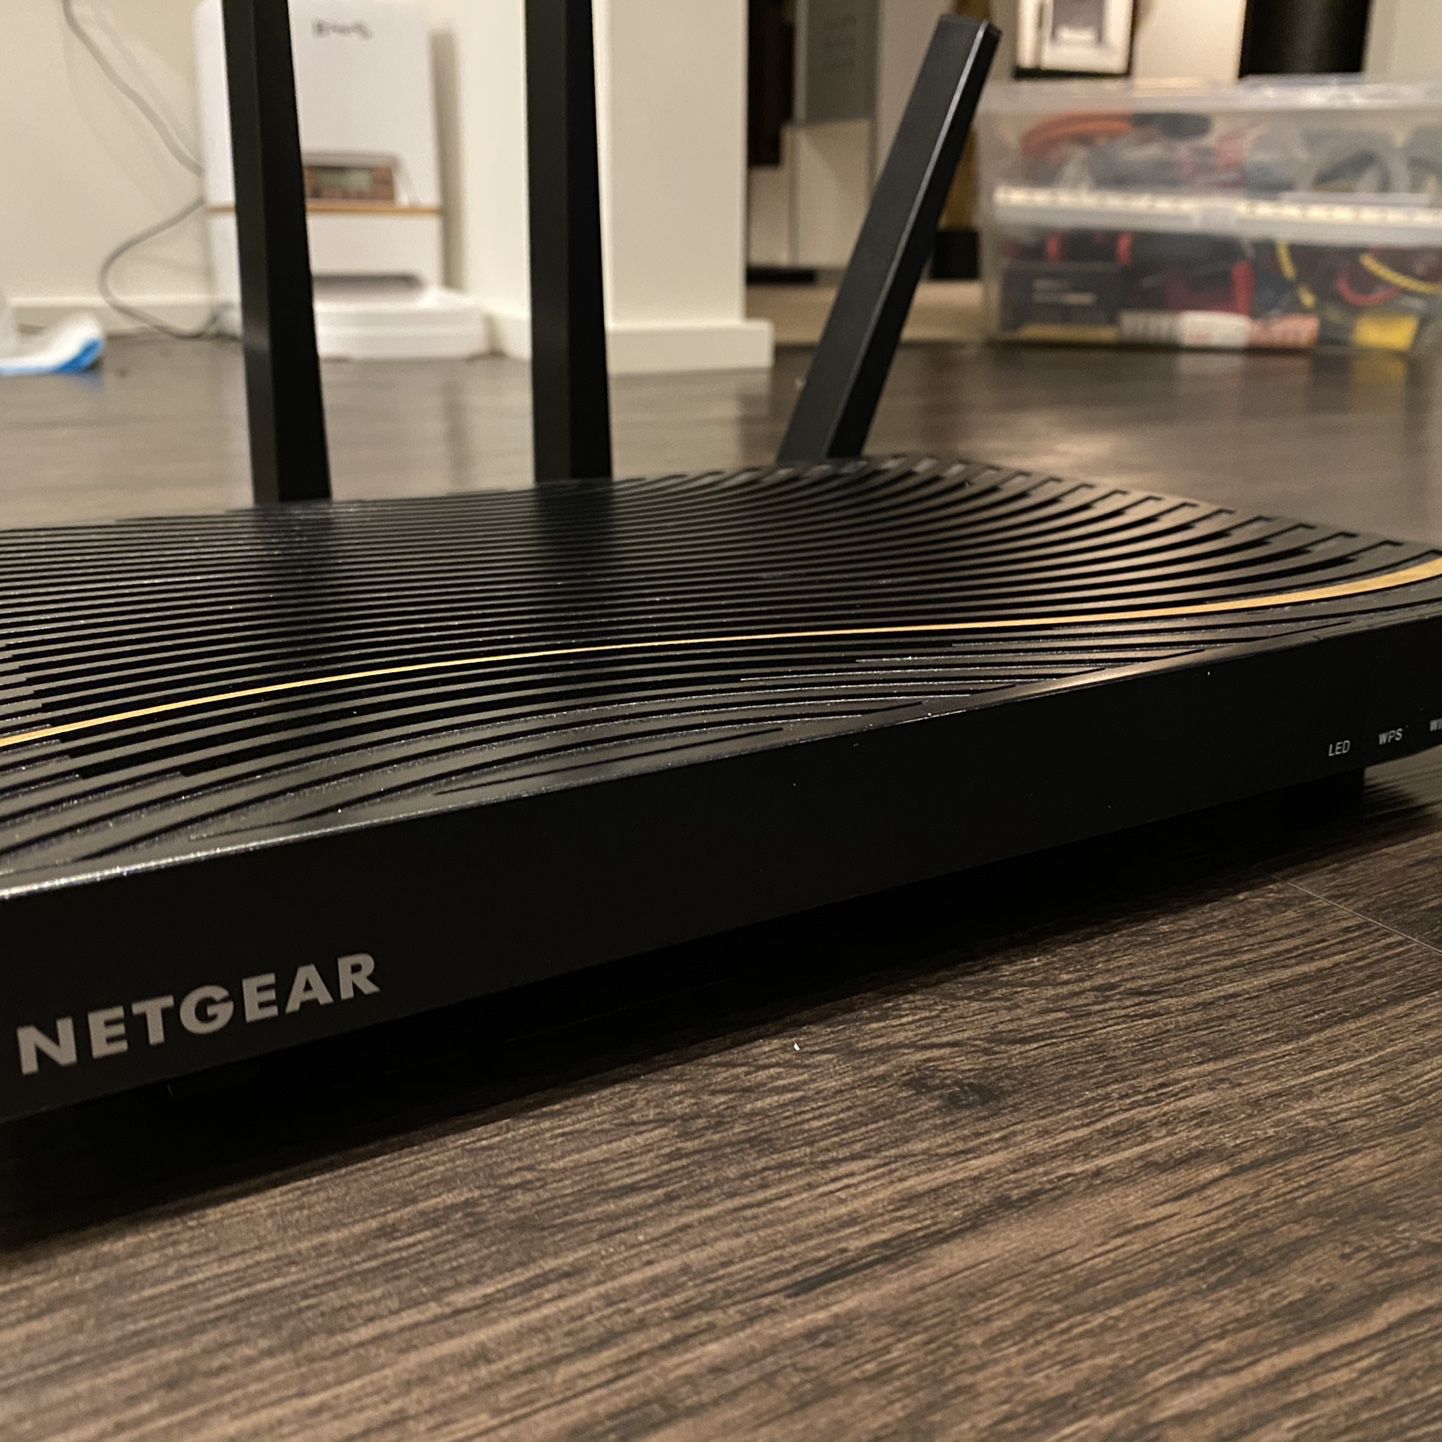 NETGEAR Nighthawk X4 C7500 Modem Router